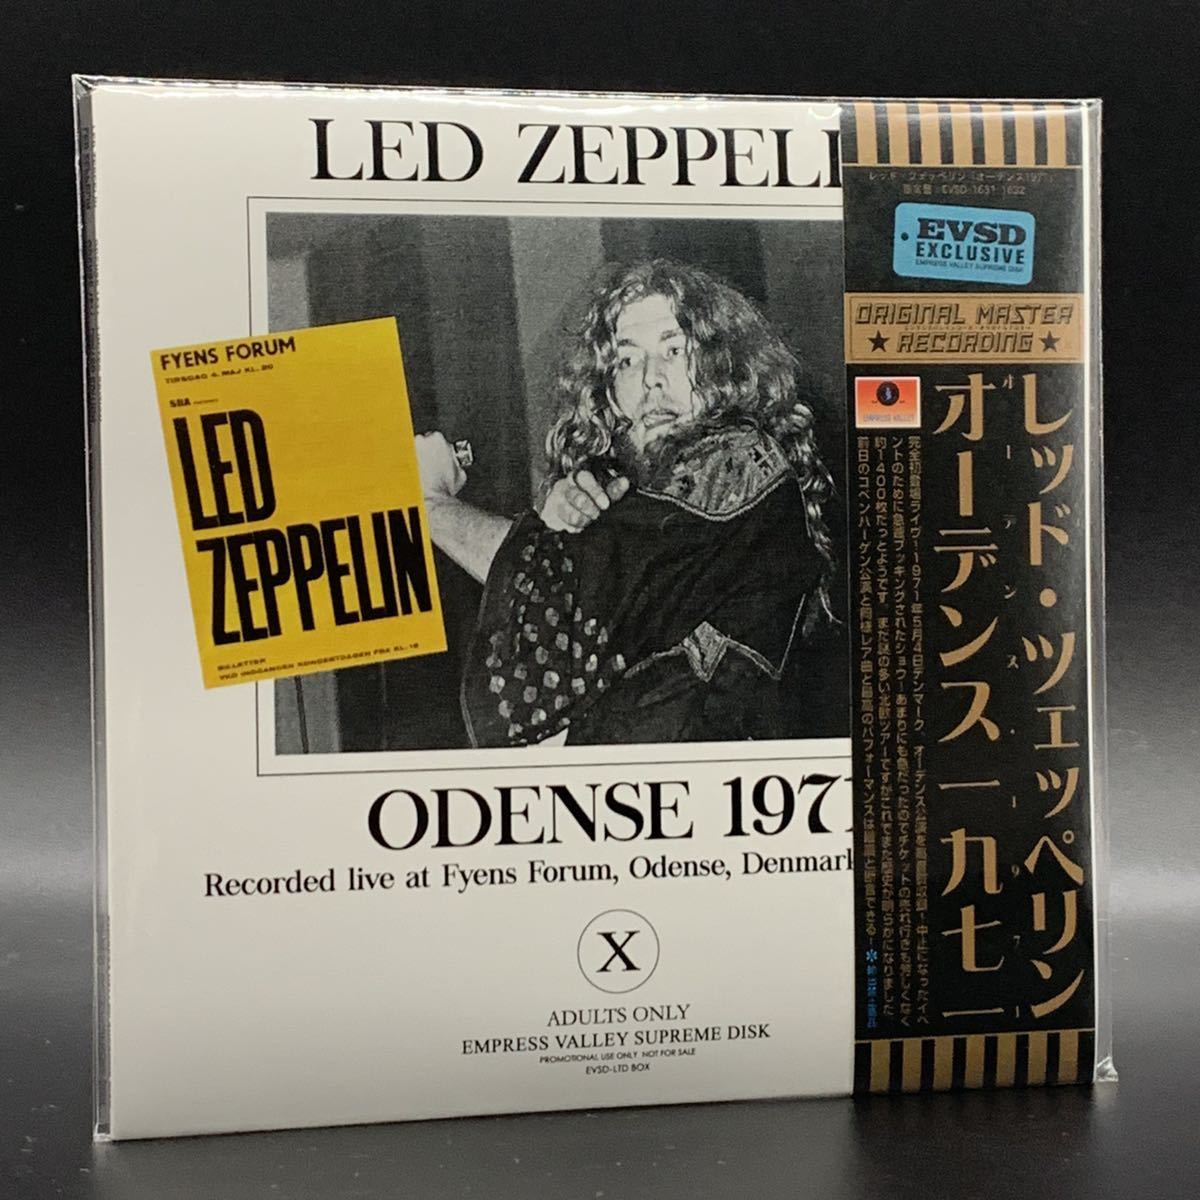 LED ZEPPELIN - ODENSE 1971 ( 2CD ) EMPRESS VALLEY SUPREME DISK